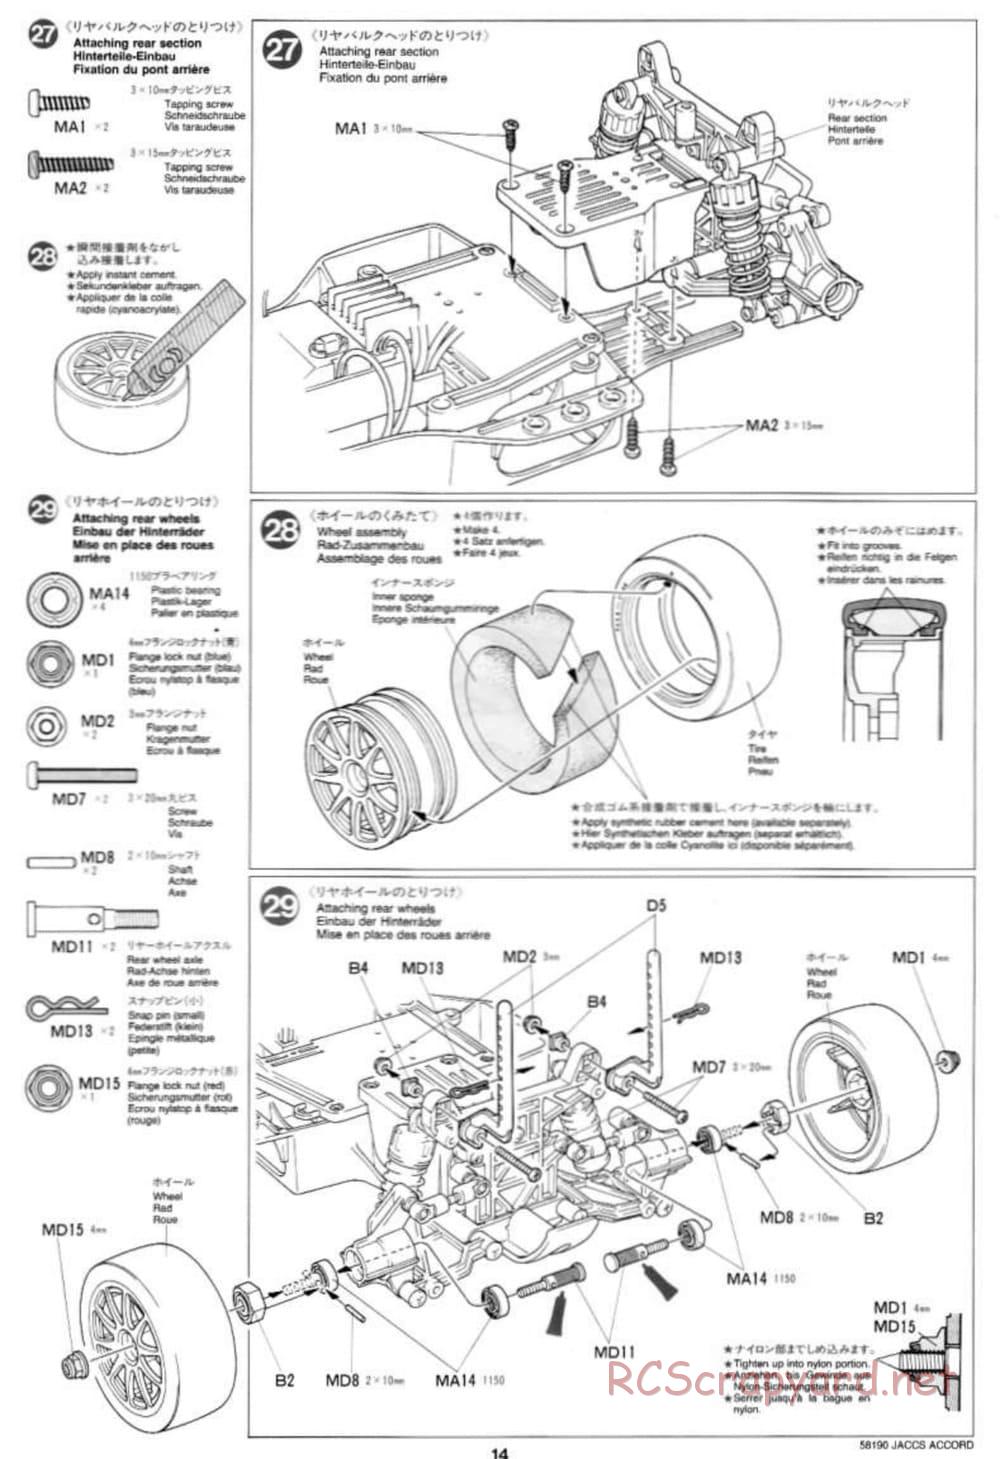 Tamiya - JACCS Honda Accord - FF-01 Chassis - Manual - Page 14